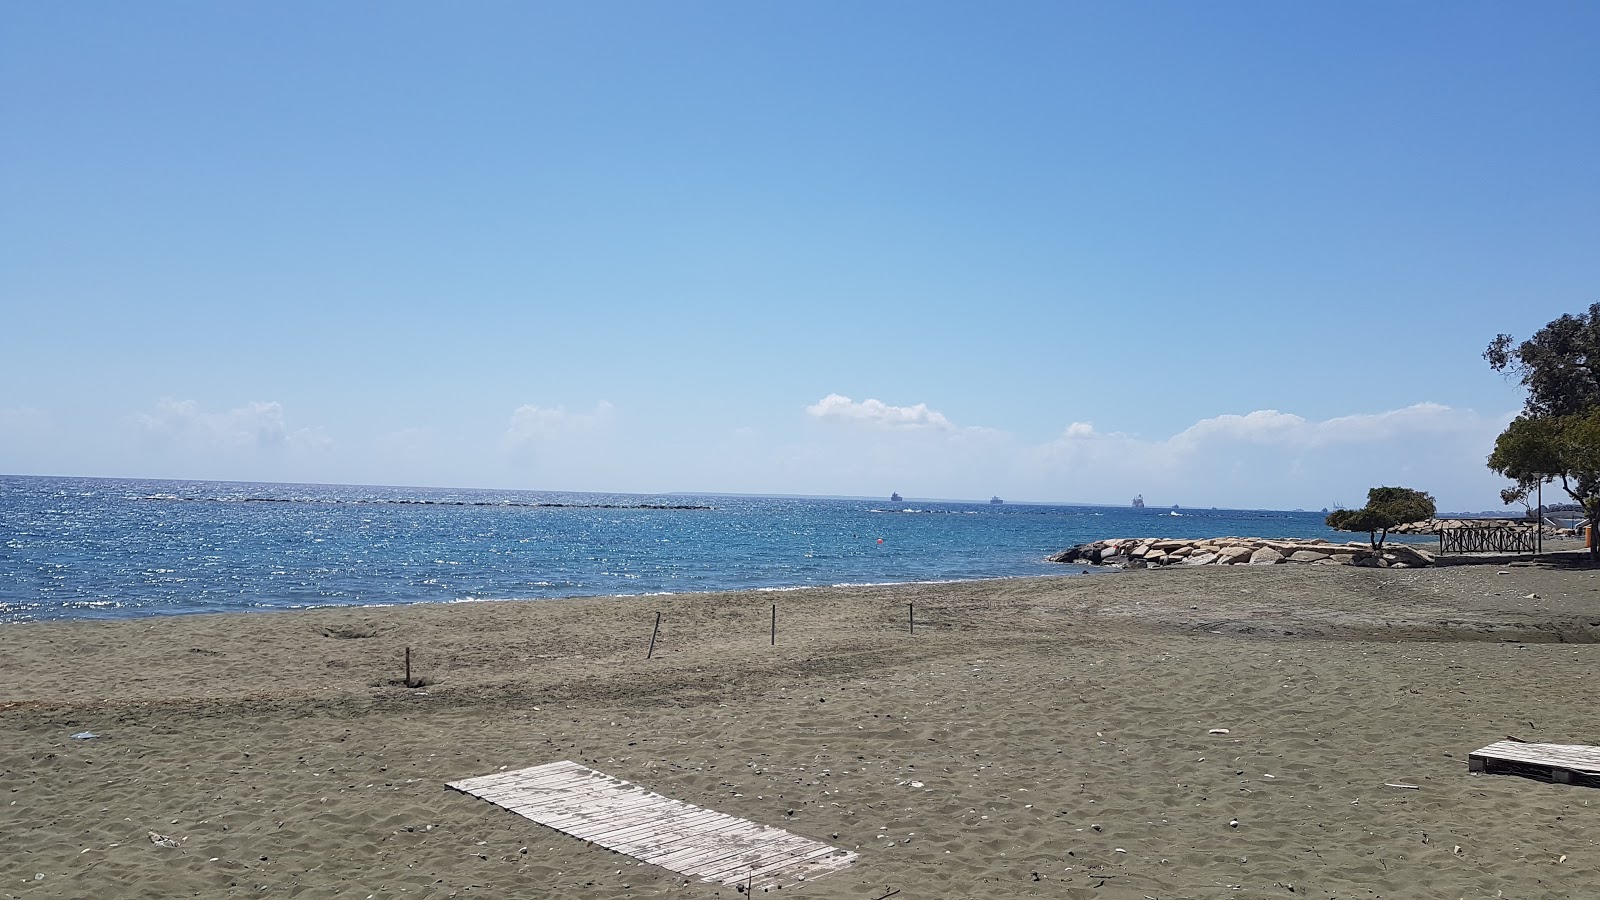 Foto af Armonia beach - populært sted blandt afslapningskendere